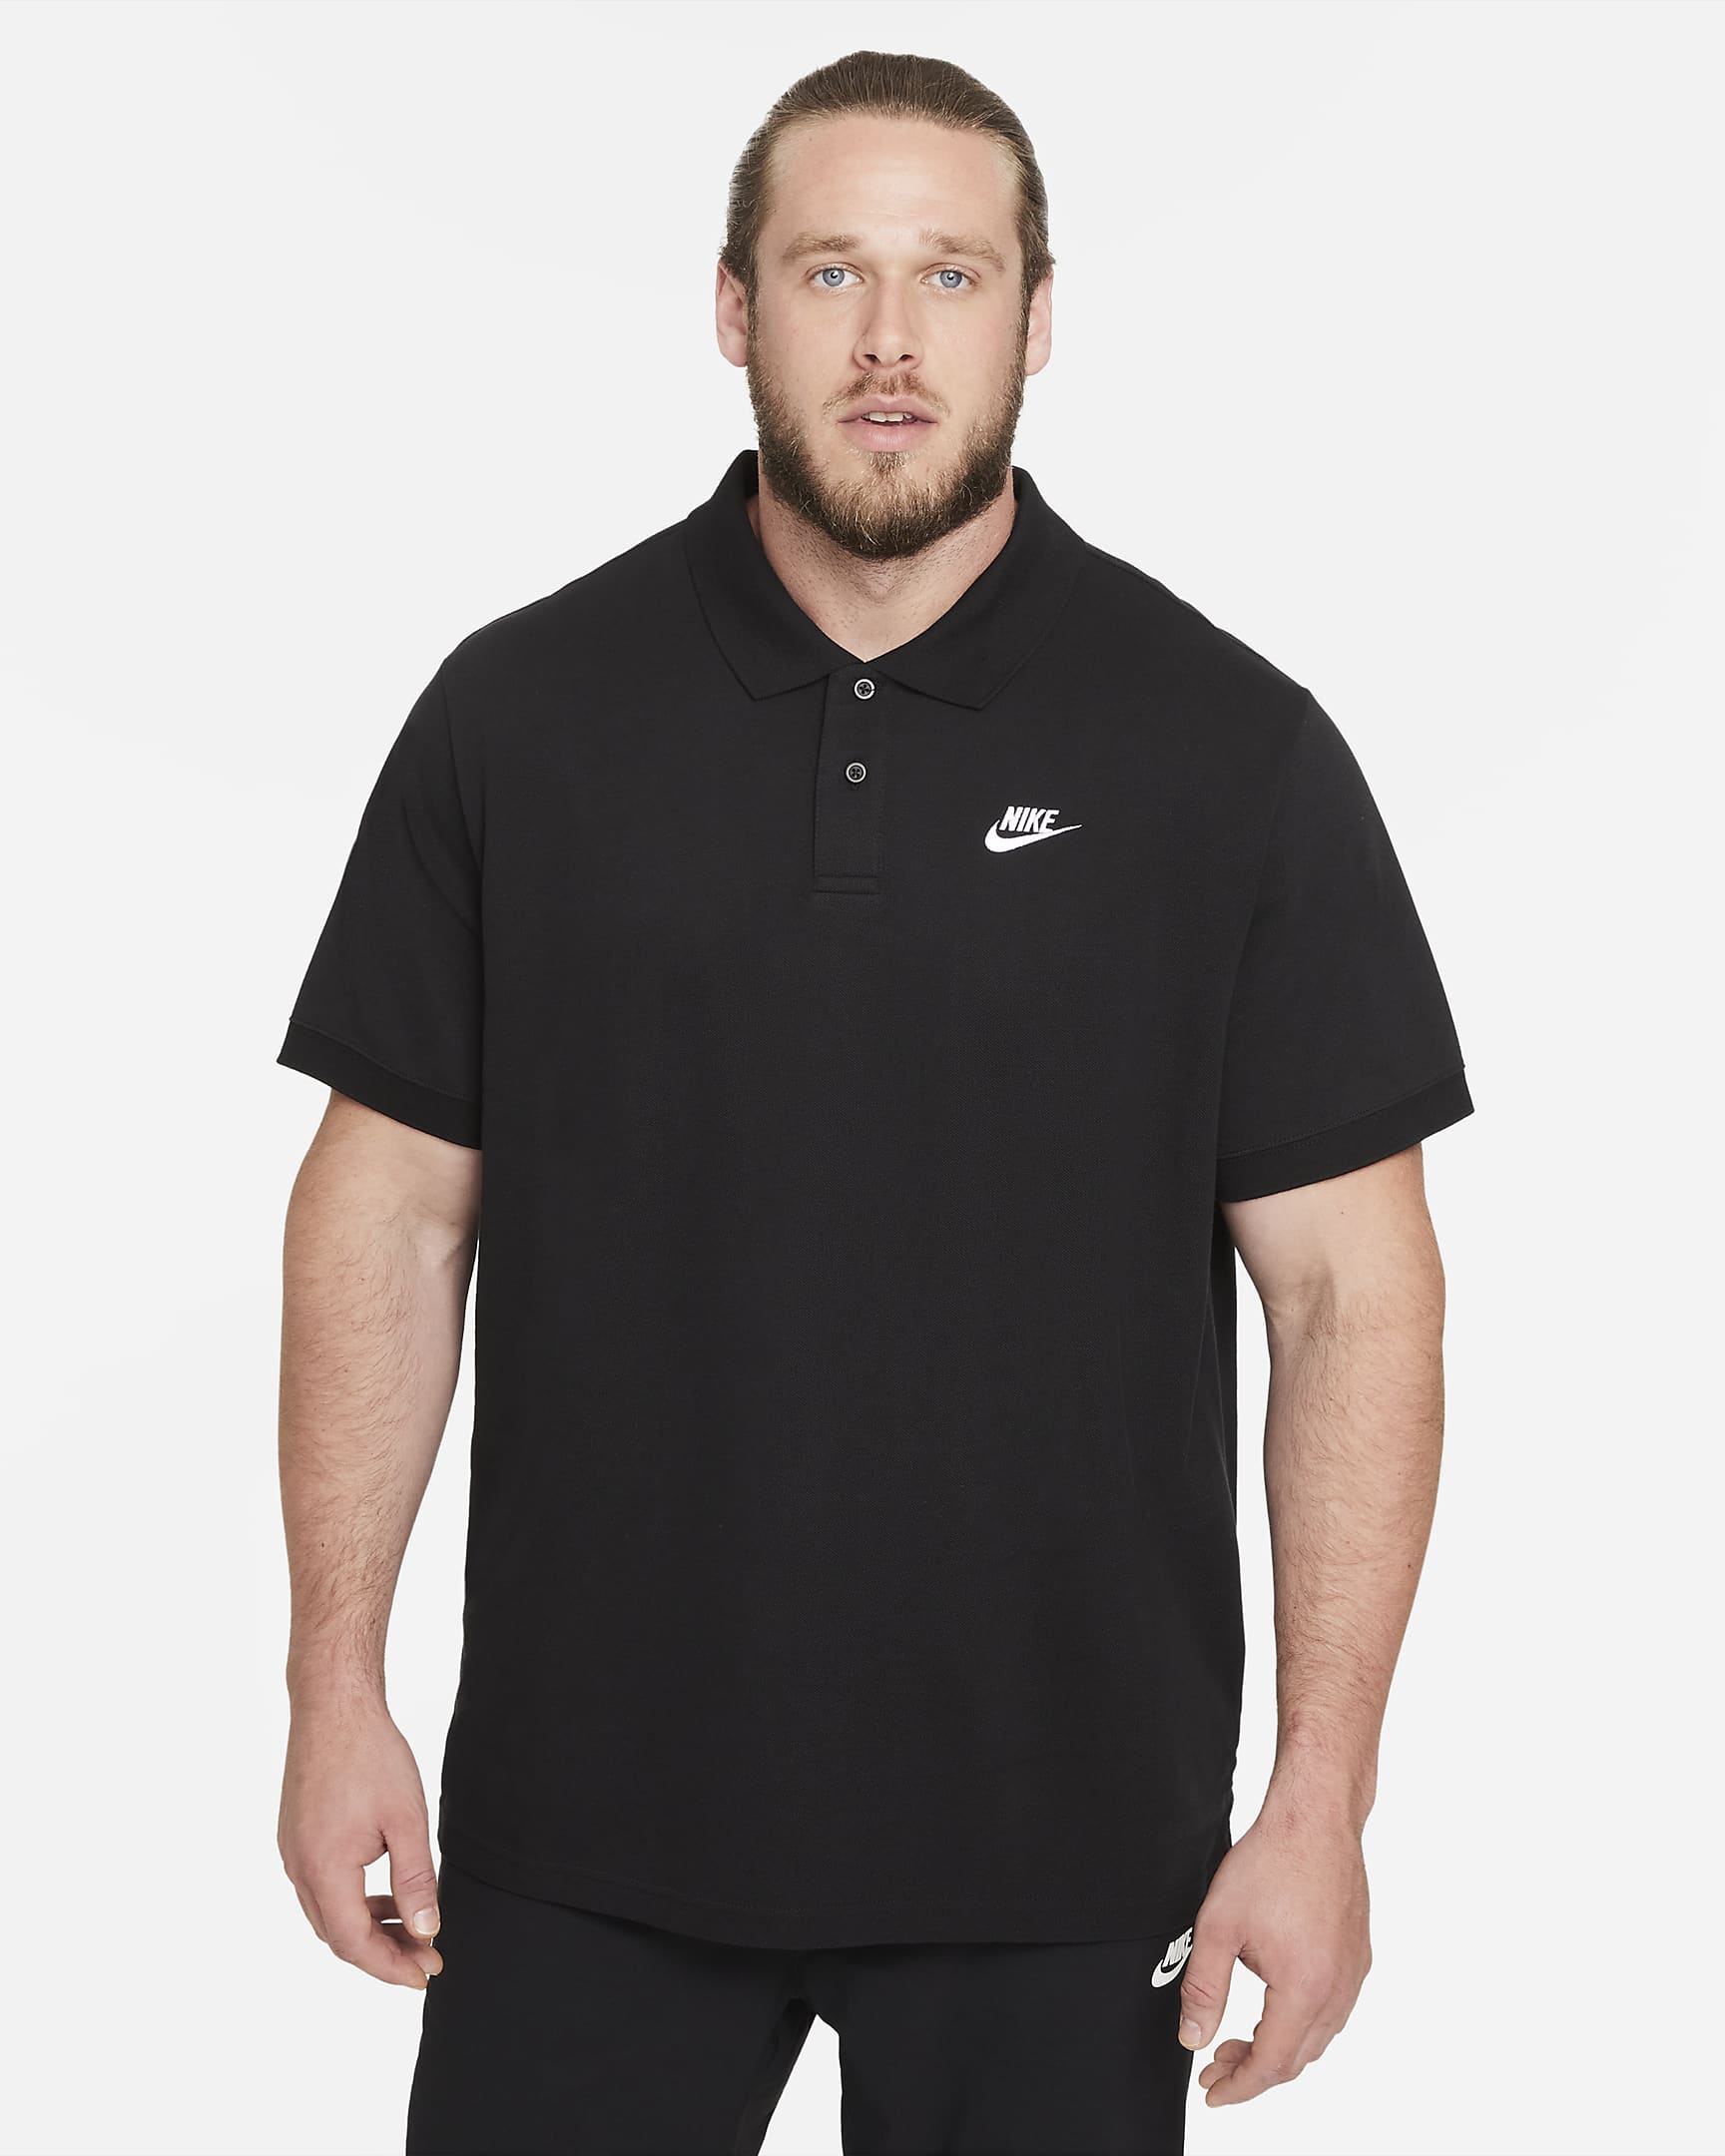 Nike Sportswear Men's Polo - Black/White